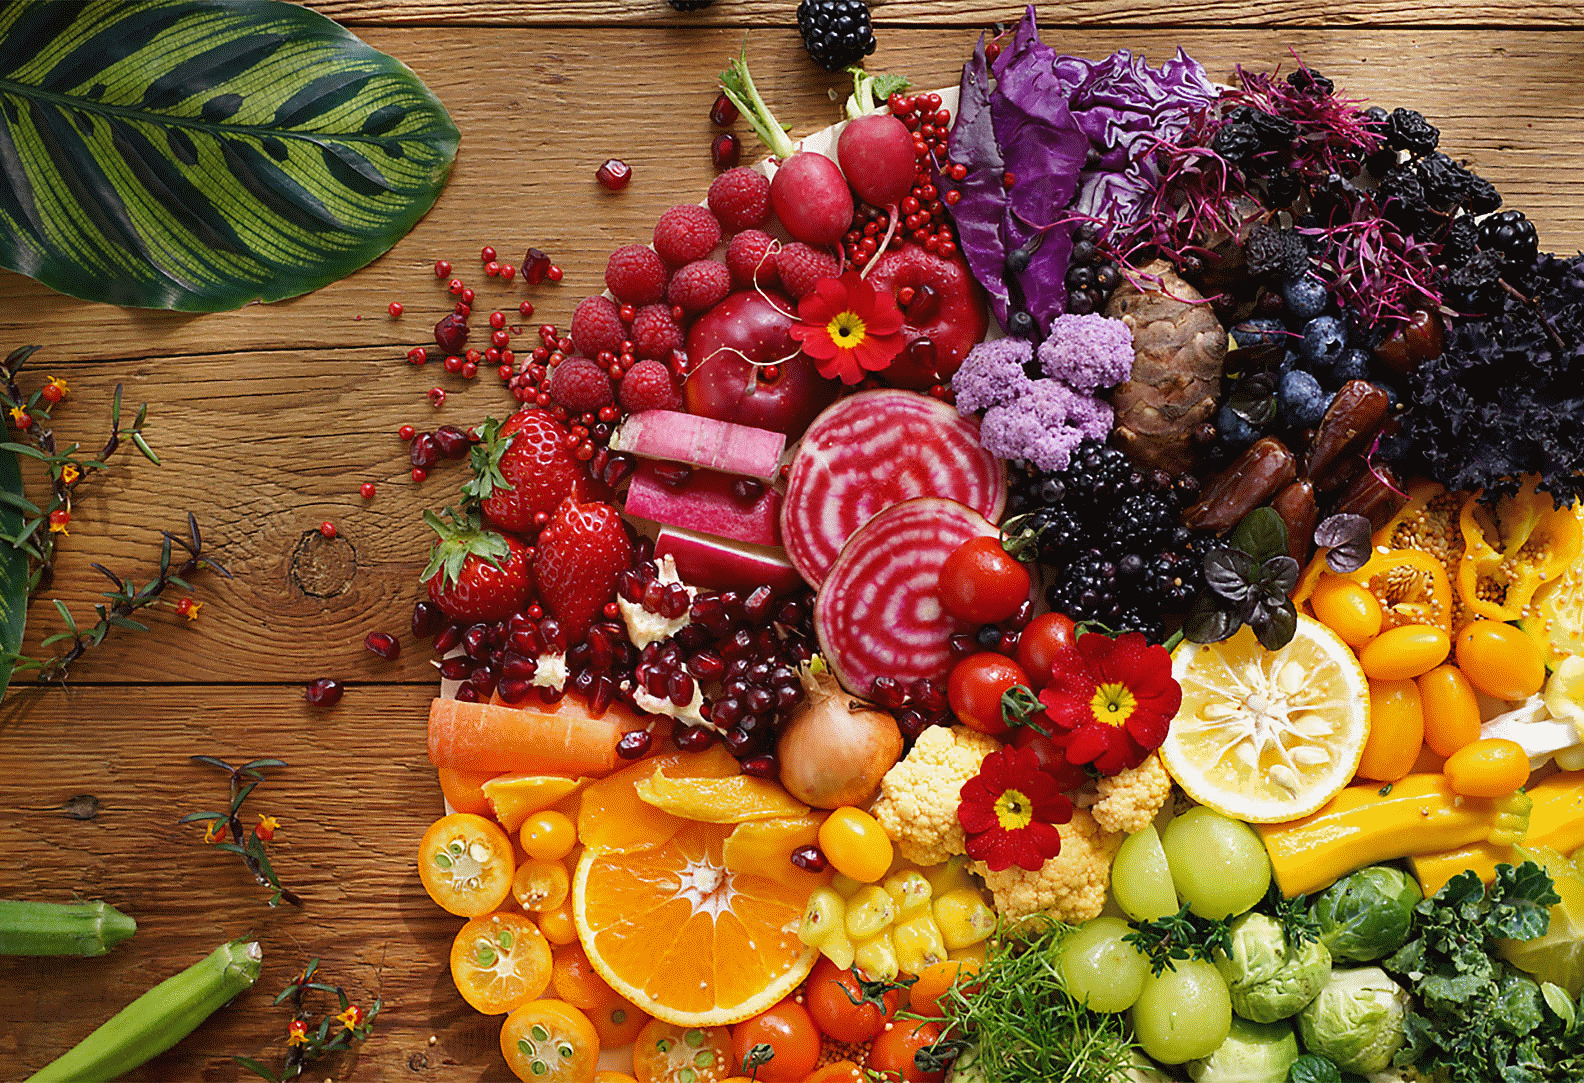 Image de légumes et de fruits colorés capturée à l'aide de l'objectif avec une haute résolution uniforme